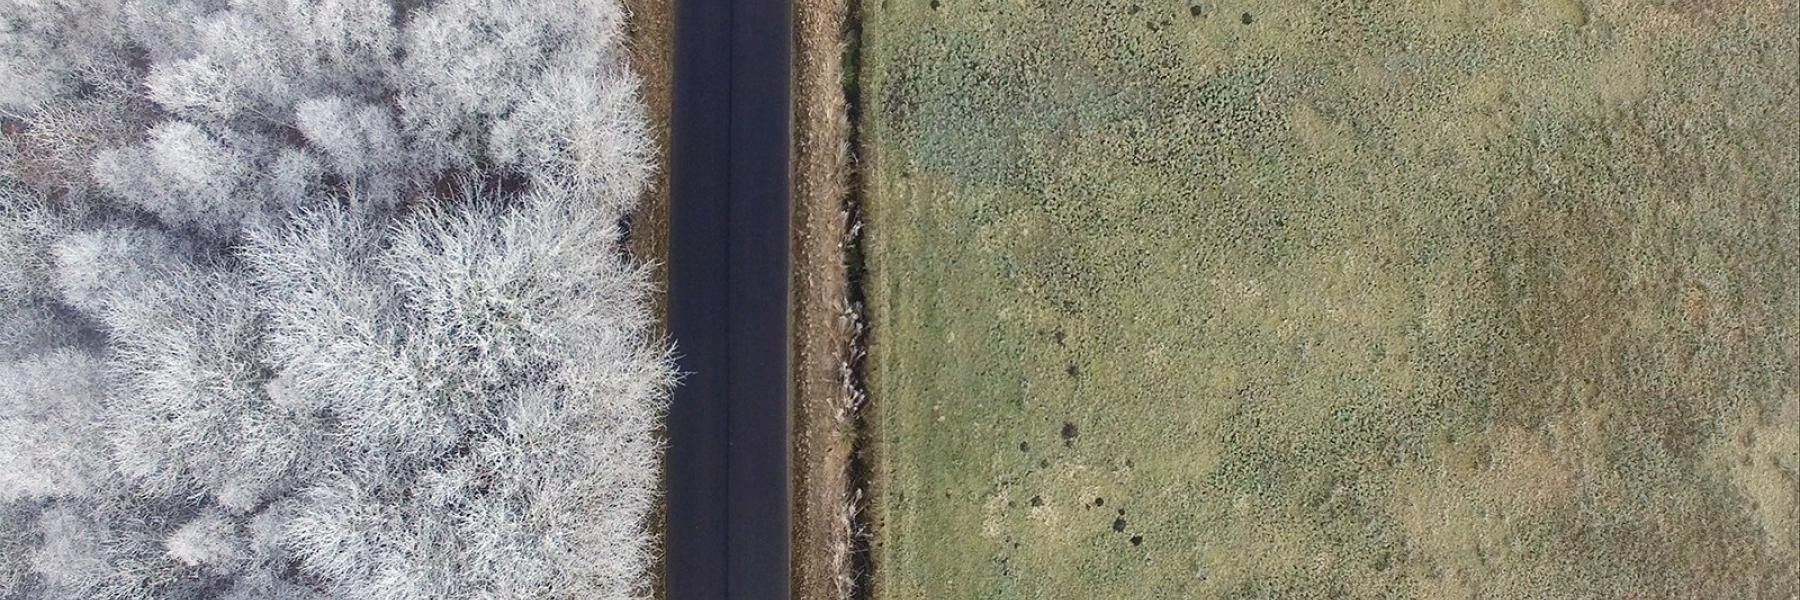 Dronefoto af skov og mark om vinteren